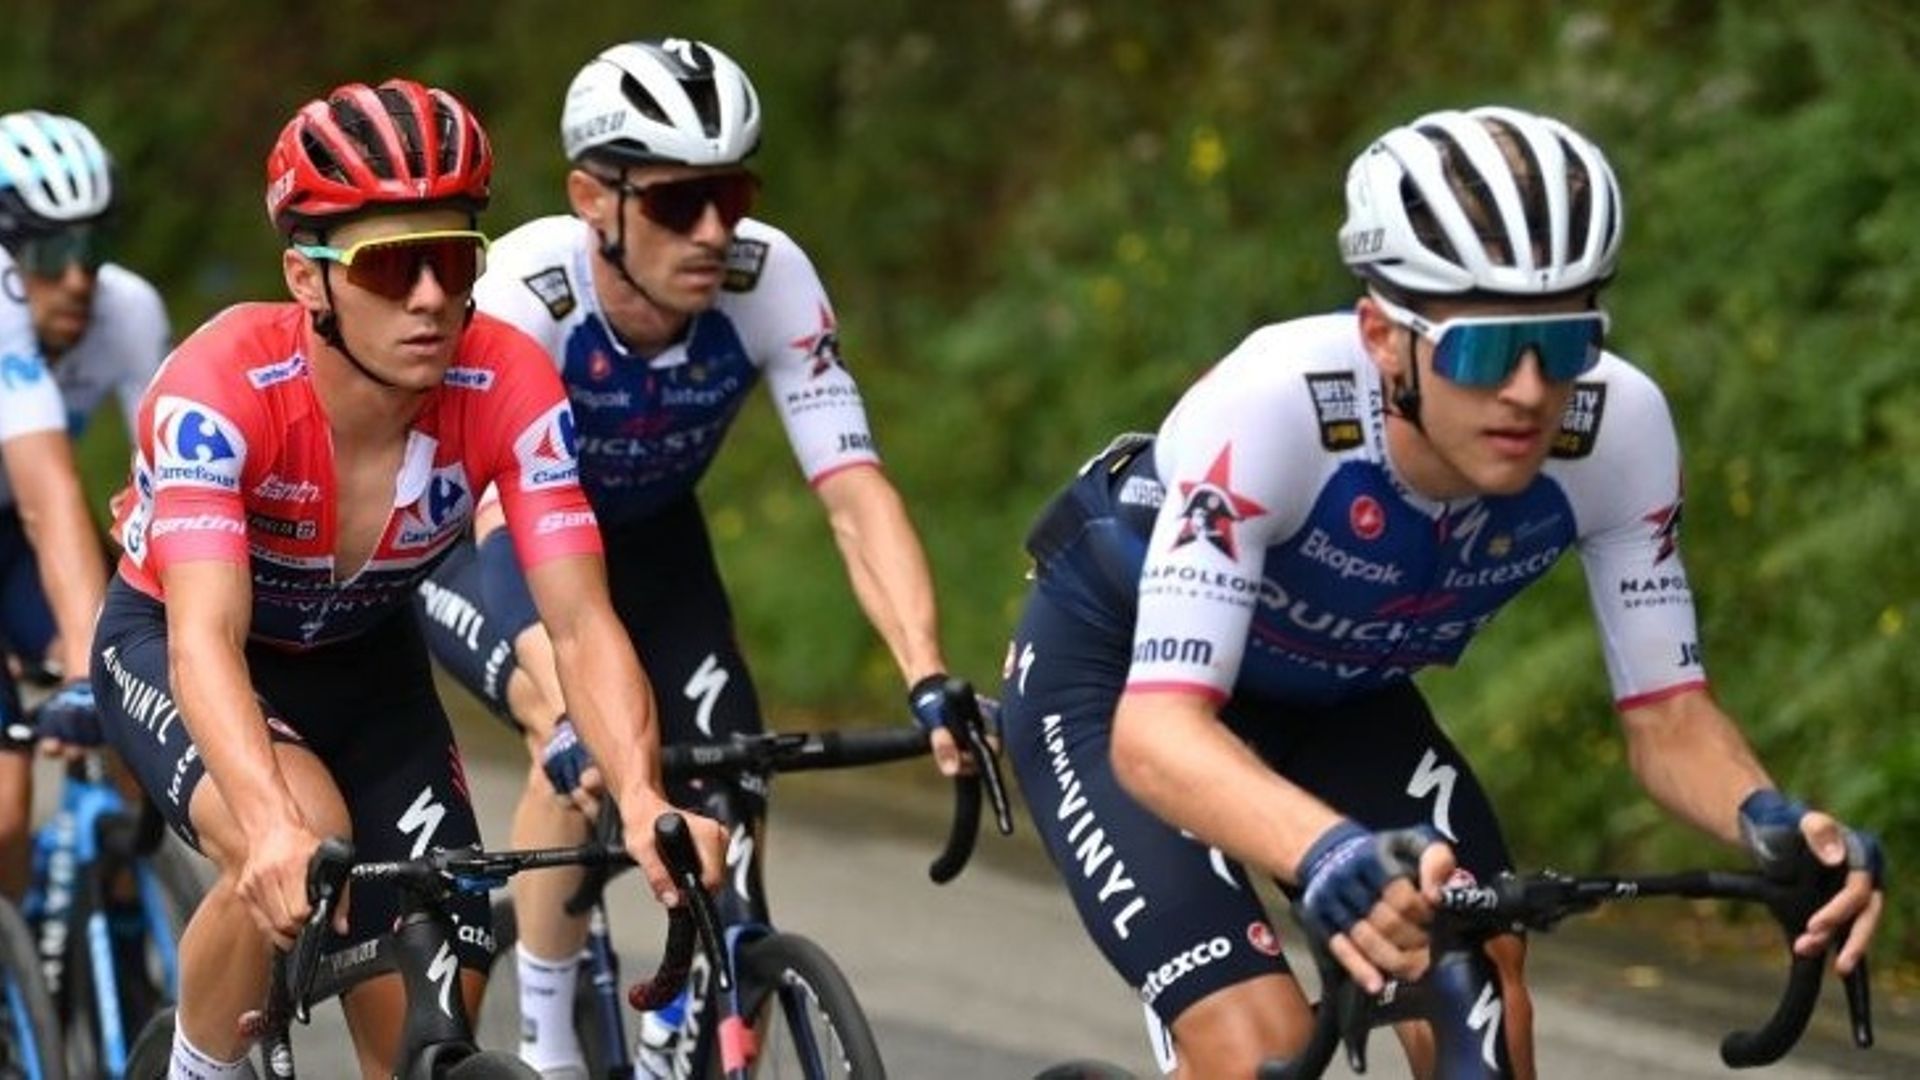 Cyclisme : Ilan Van Wilder (tout à droite) emmène le peloton sur les routes de la Vuelta. L’équipier de Remco Evenepoel au sein de l’équipe Quick Step-Alpha Vinyl aura joué un rôle primordial dans ce Tour d’Espagne 2022.